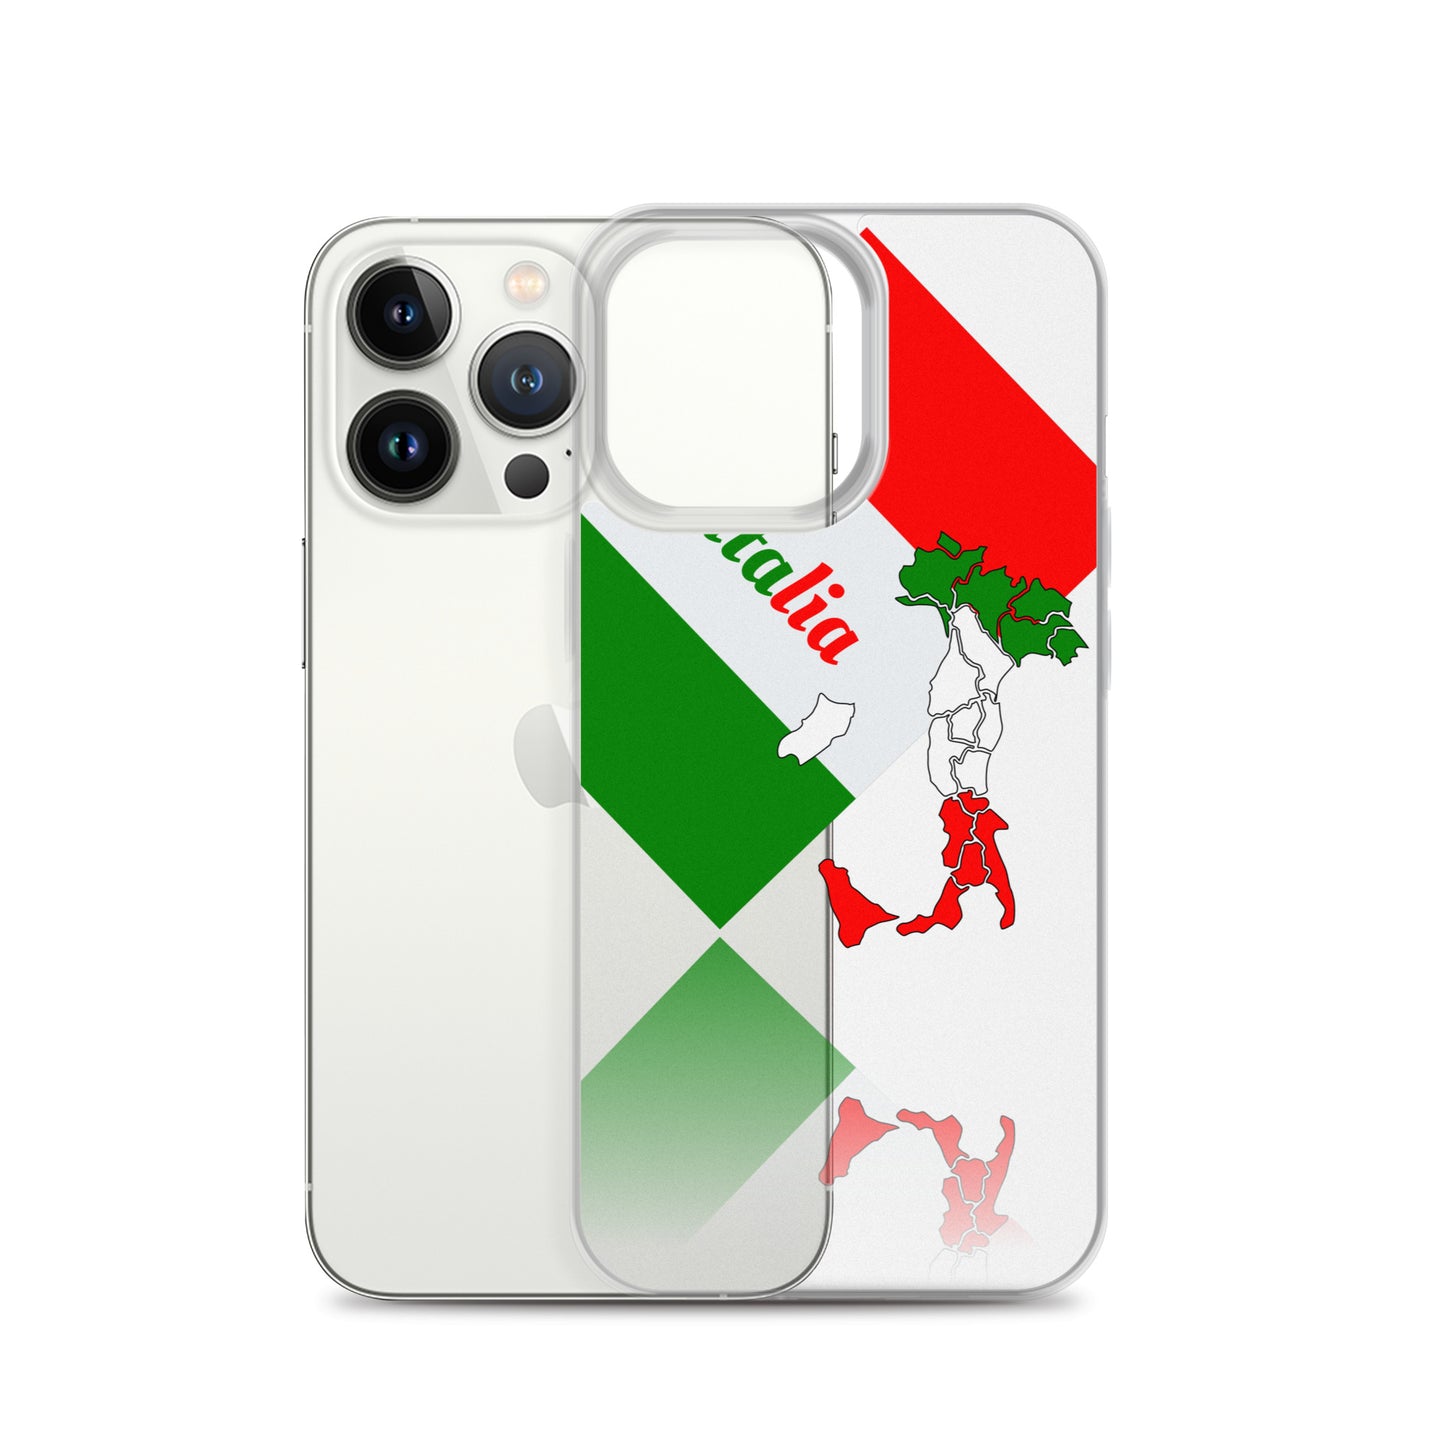 Italia élégante - Drapeau de l'Italie et carte claire Coque et skin adhésive iPhone